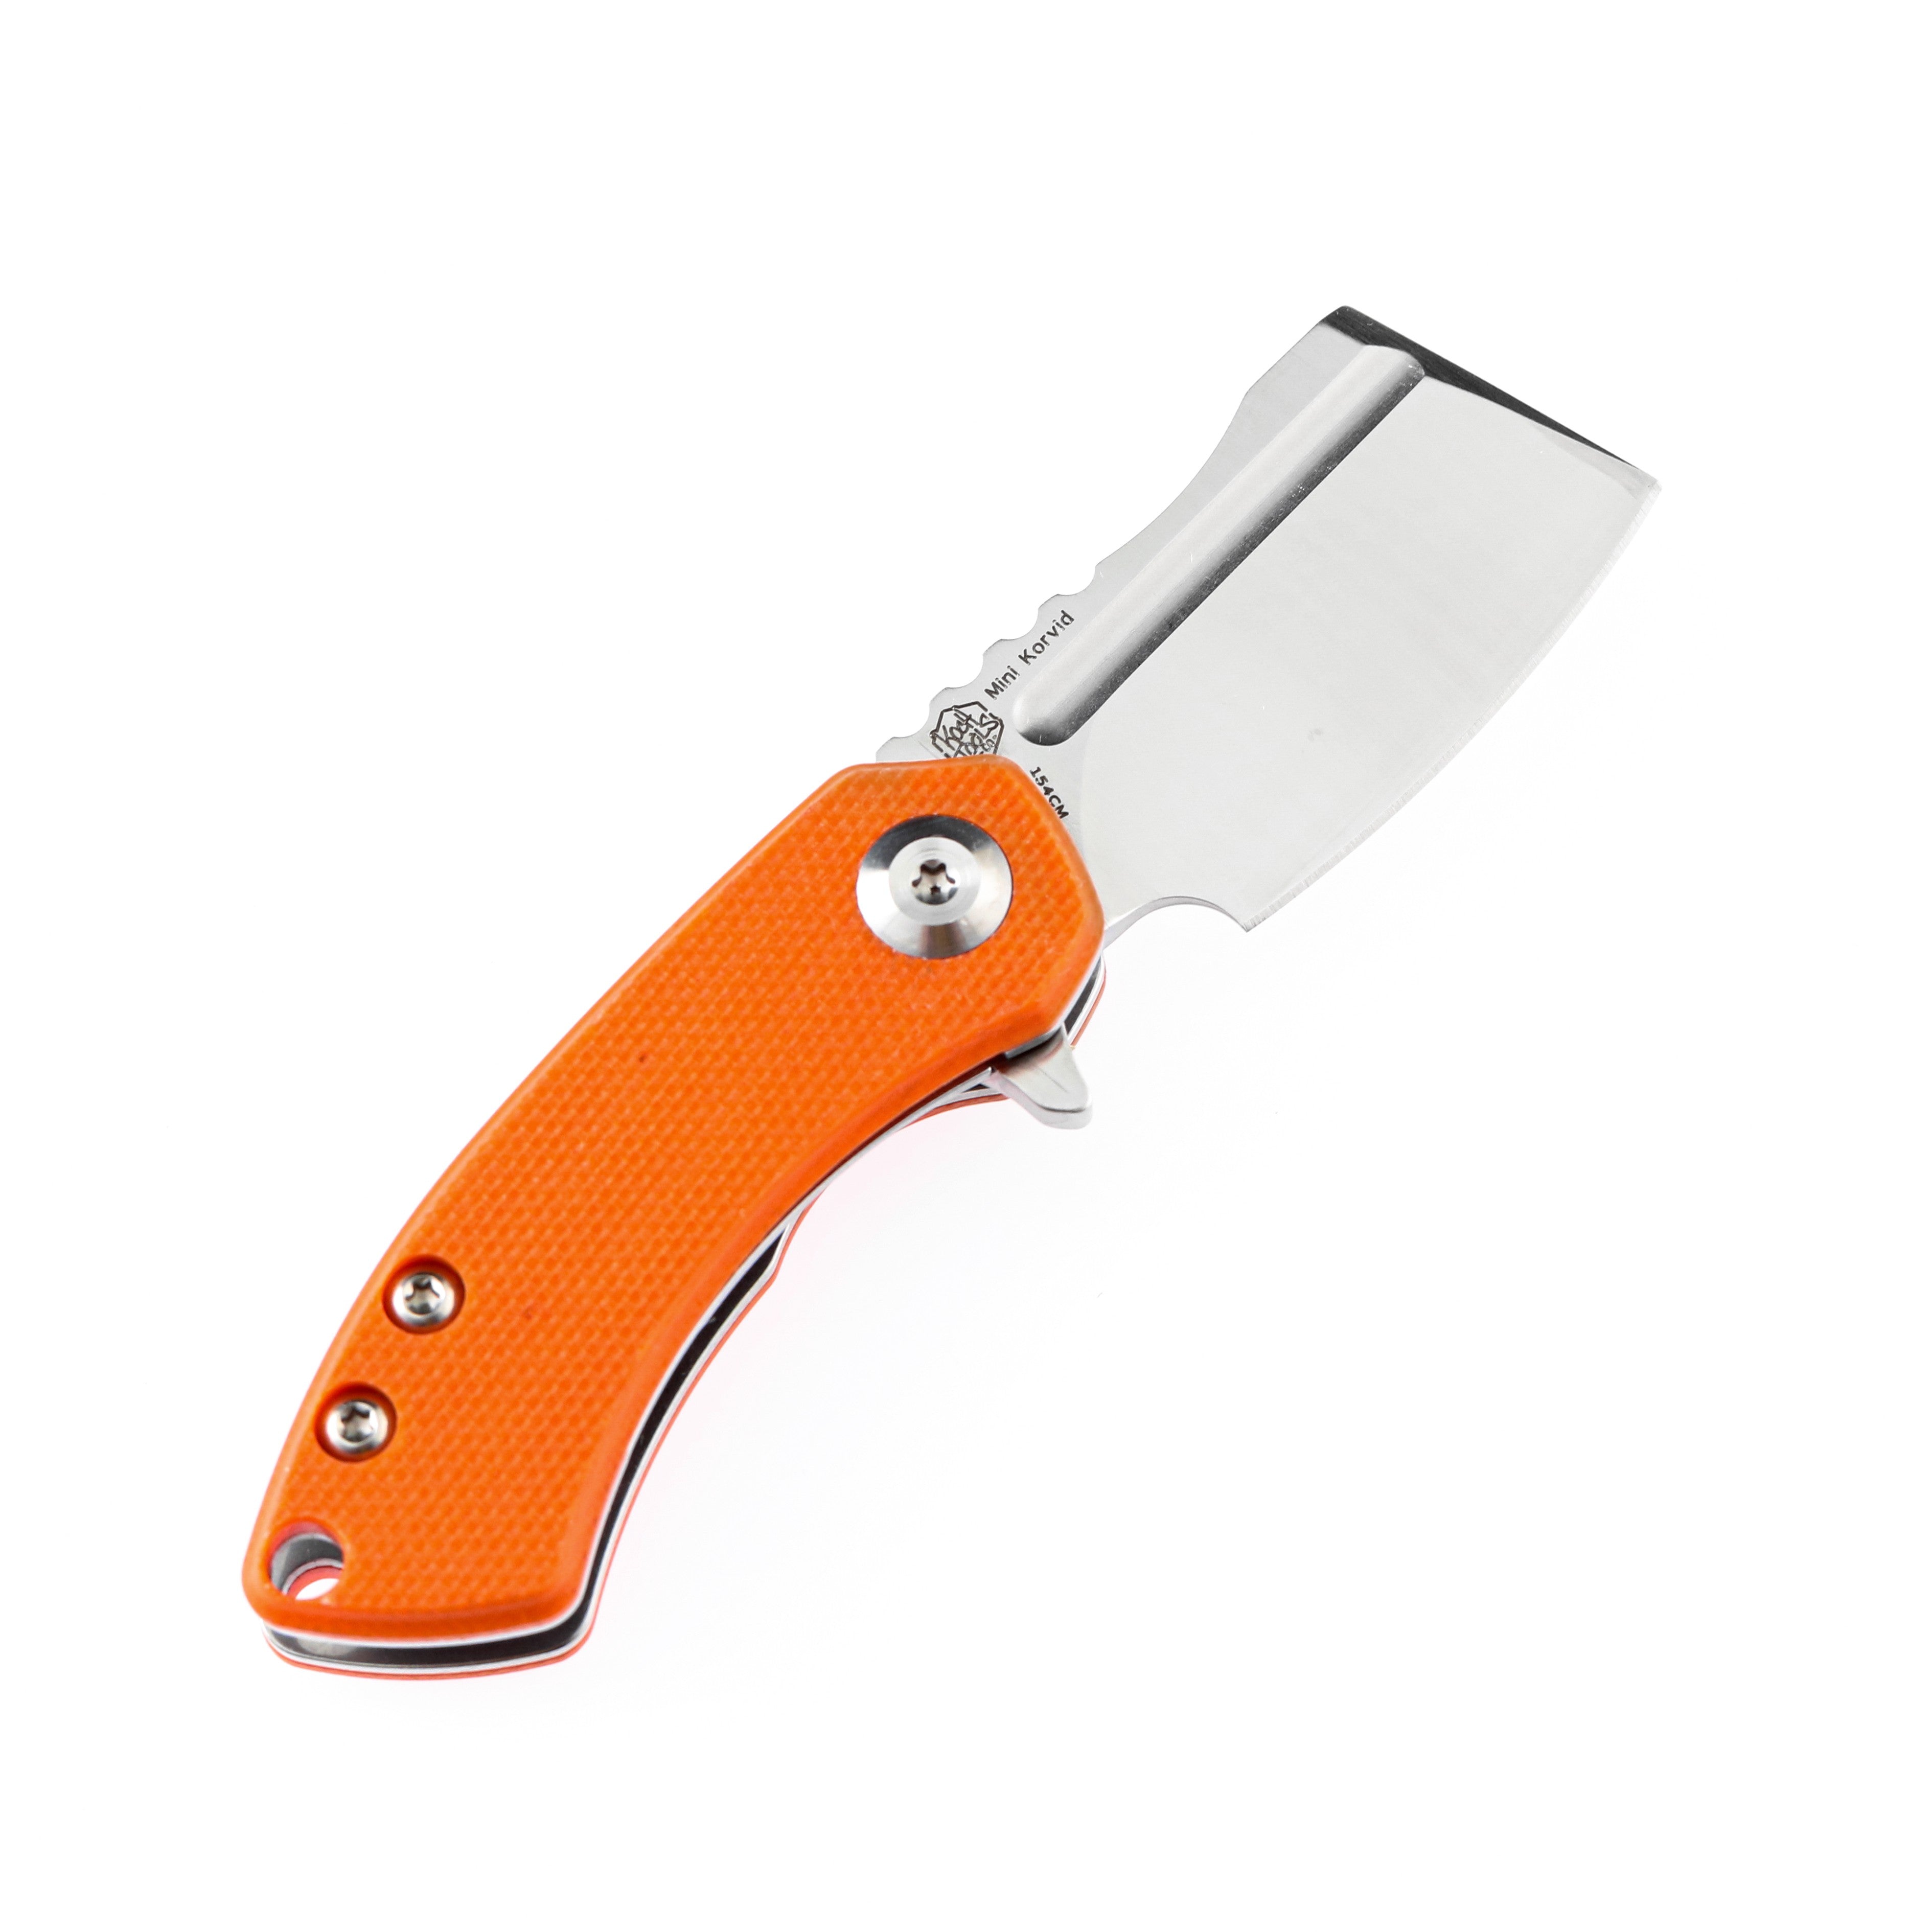 Kansept 刀具 T3030A6 迷你 Korvid 154 厘米刀片橙色 G10 手柄内衬锁 Edc 刀具